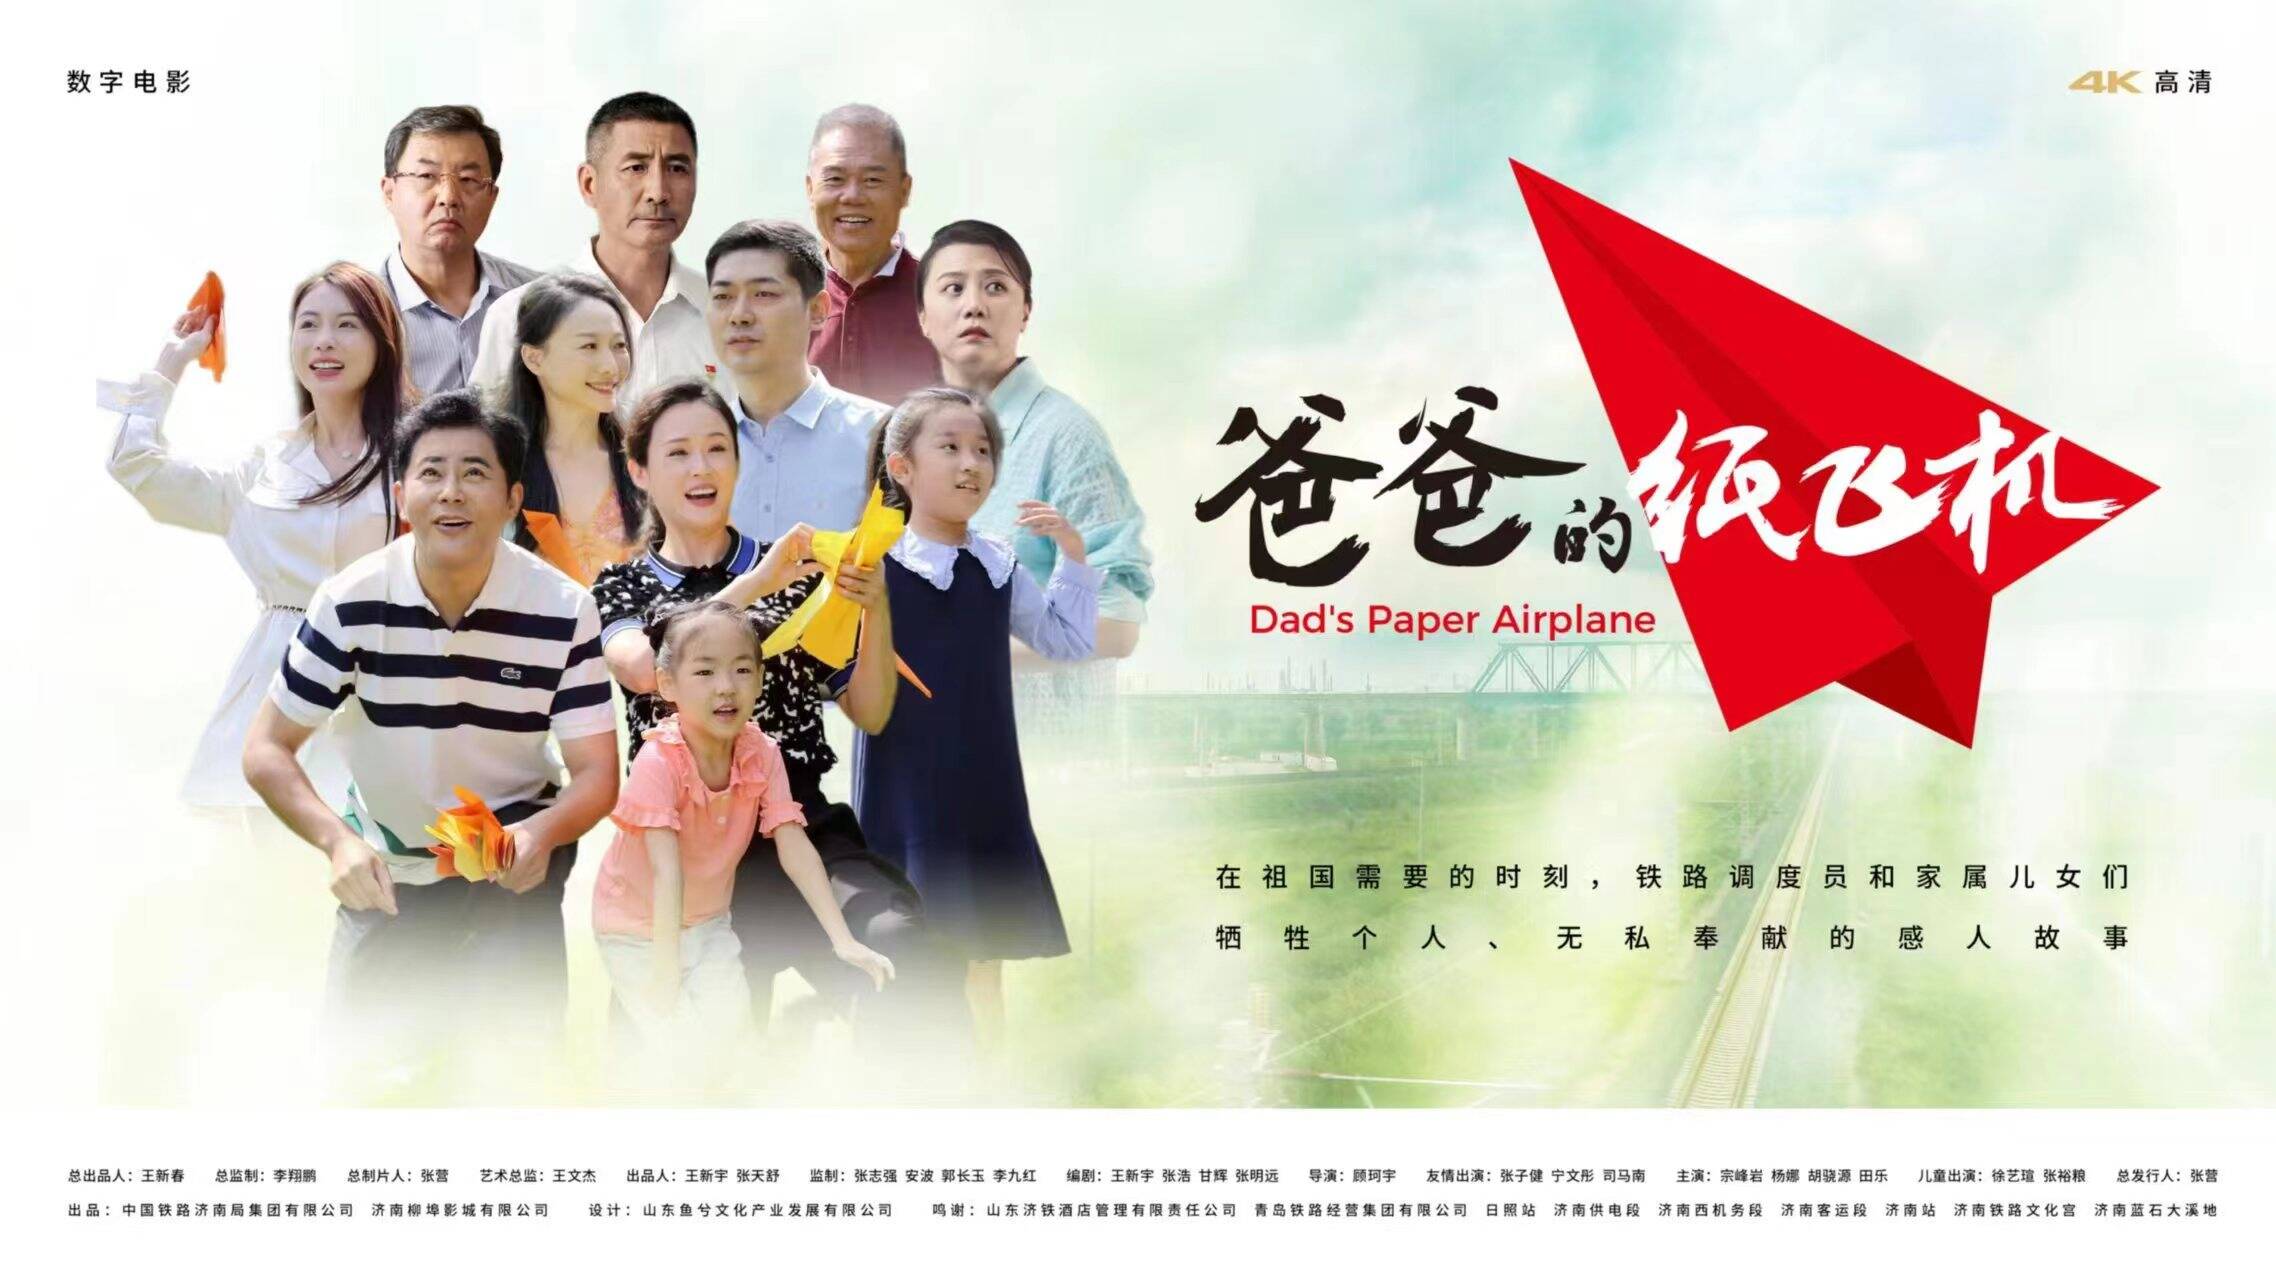 电影《爸爸的纸飞机》和国铁济南局 MV《为了爱》联袂献映